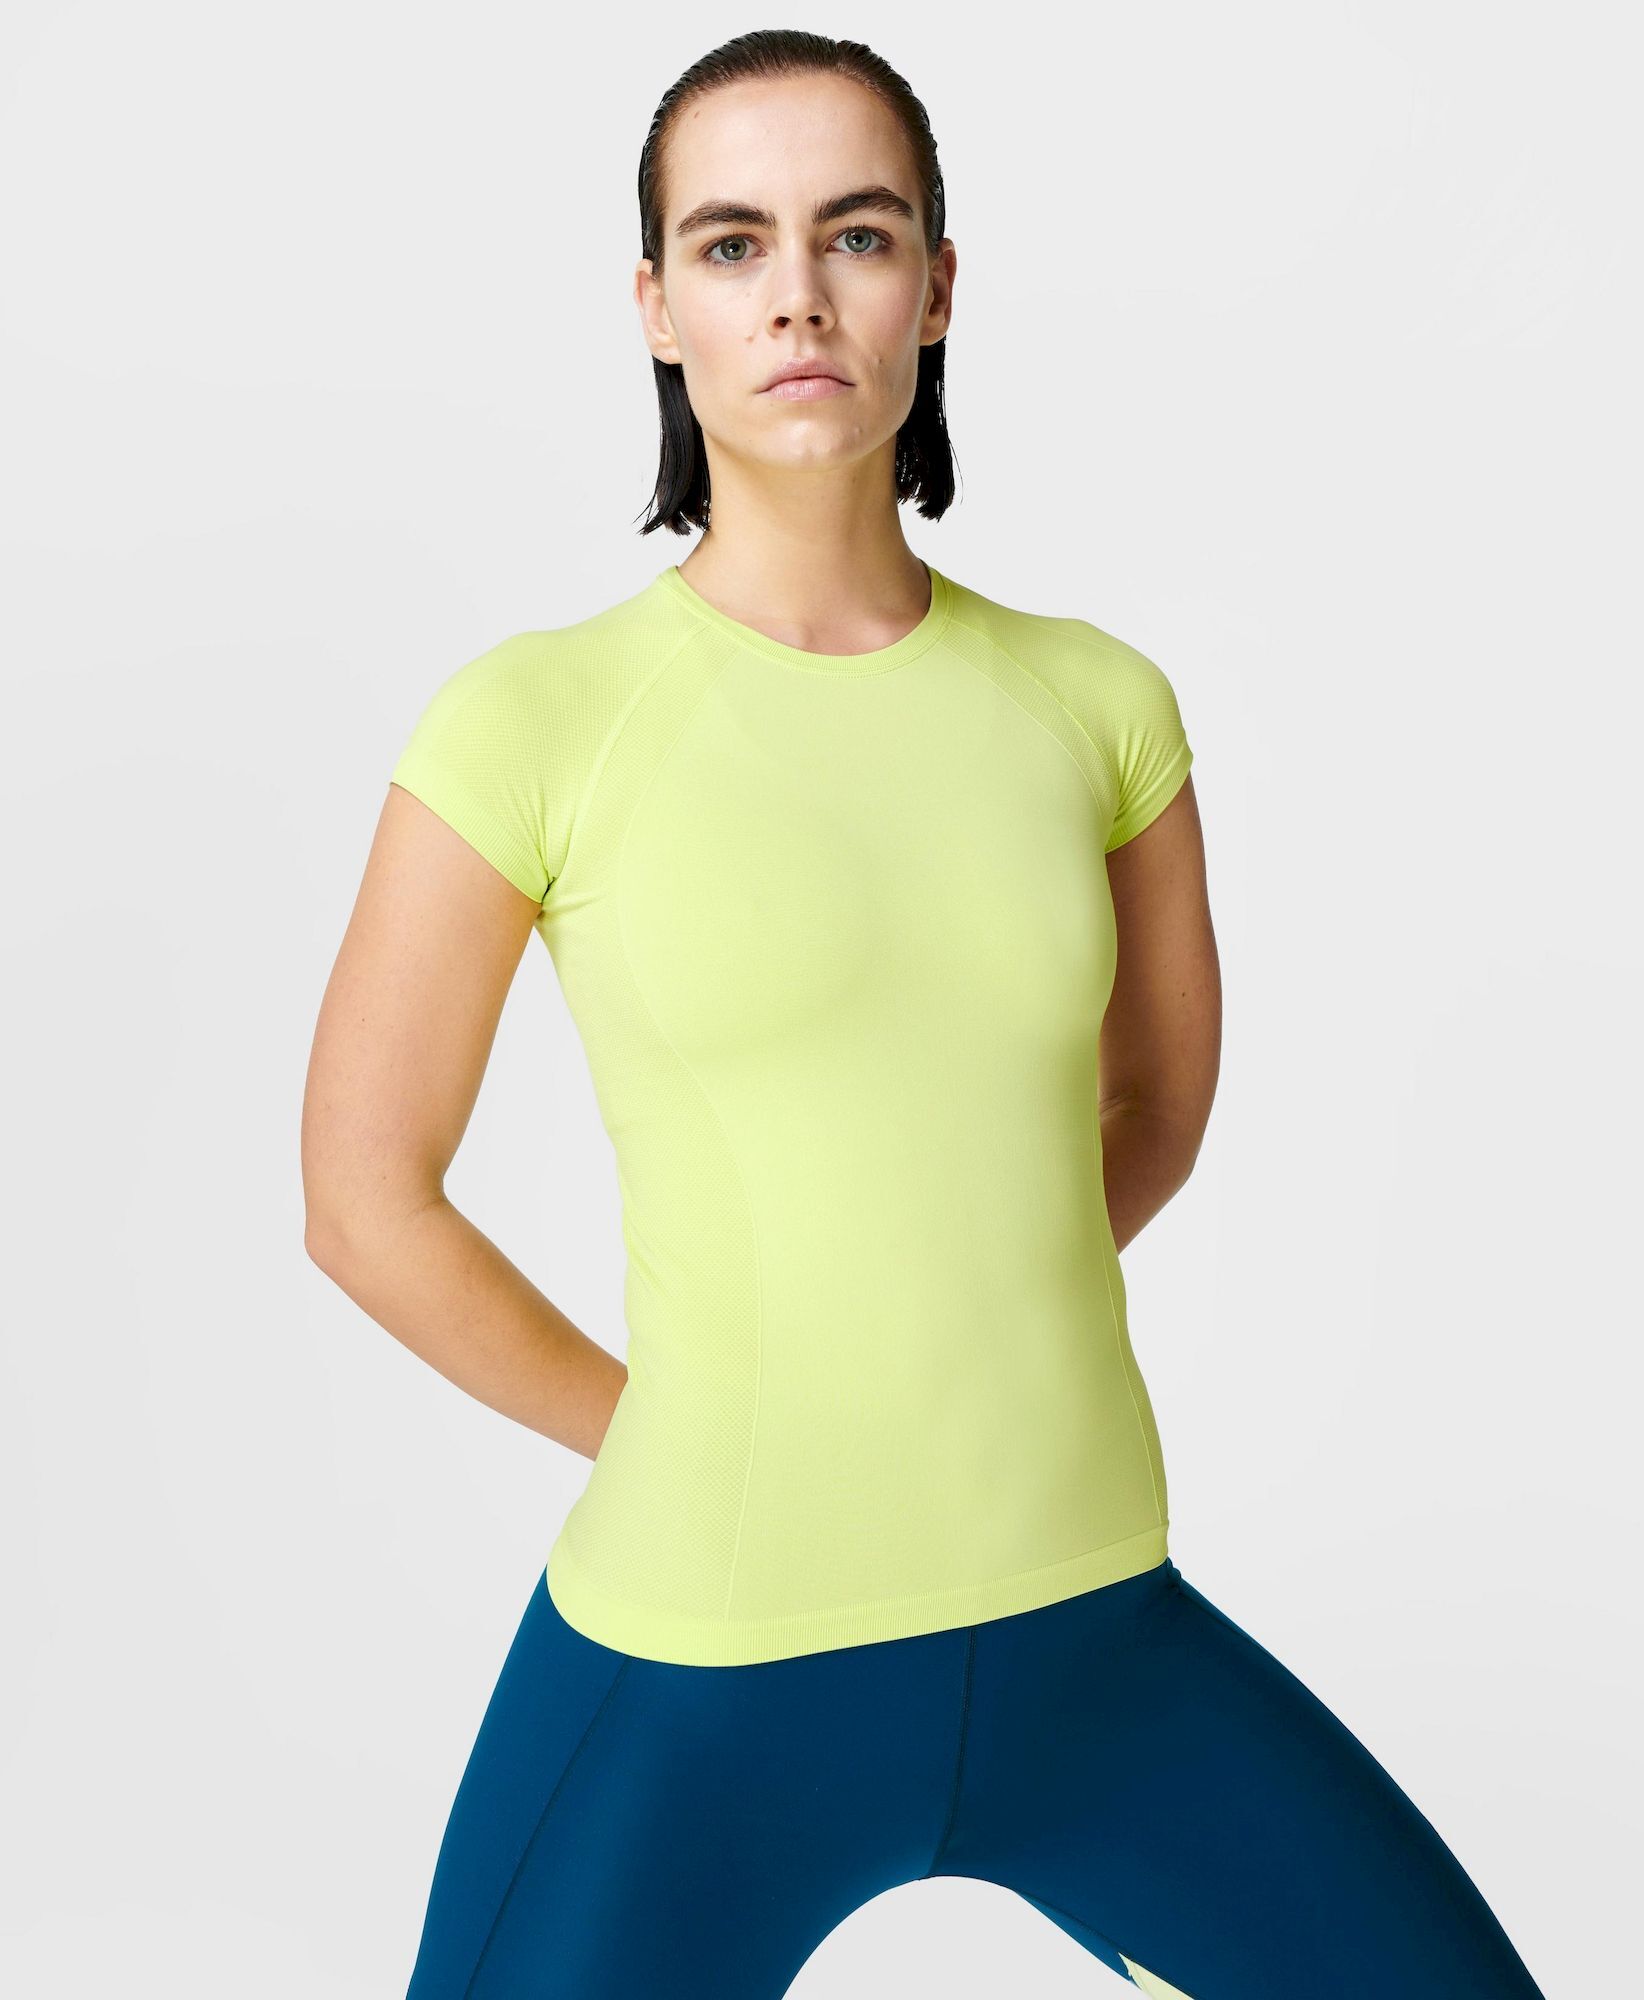 Sweaty Betty Athlete Seamless Workout T-shirt - Camiseta - Mujer